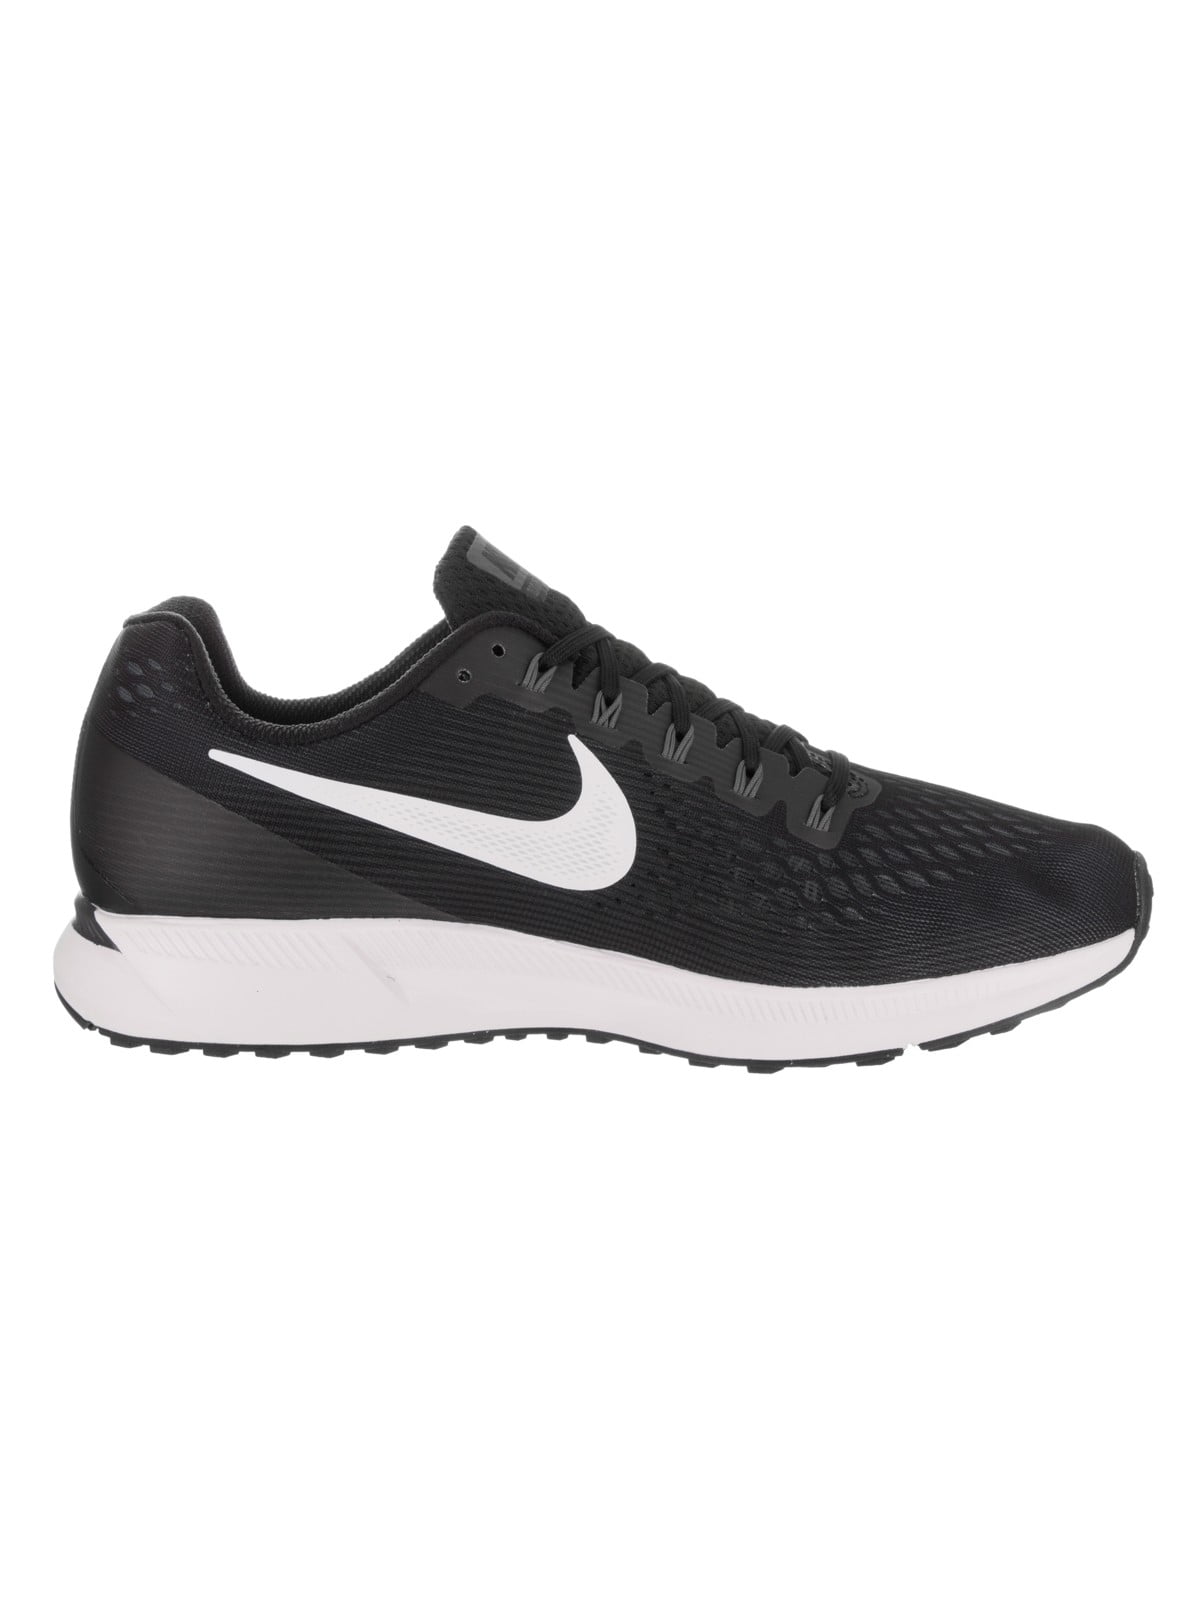 Nike Men's Air Pegasus 34 Black / White-Dark Grey Ankle-High Running Shoe - 9.5M - Walmart.com